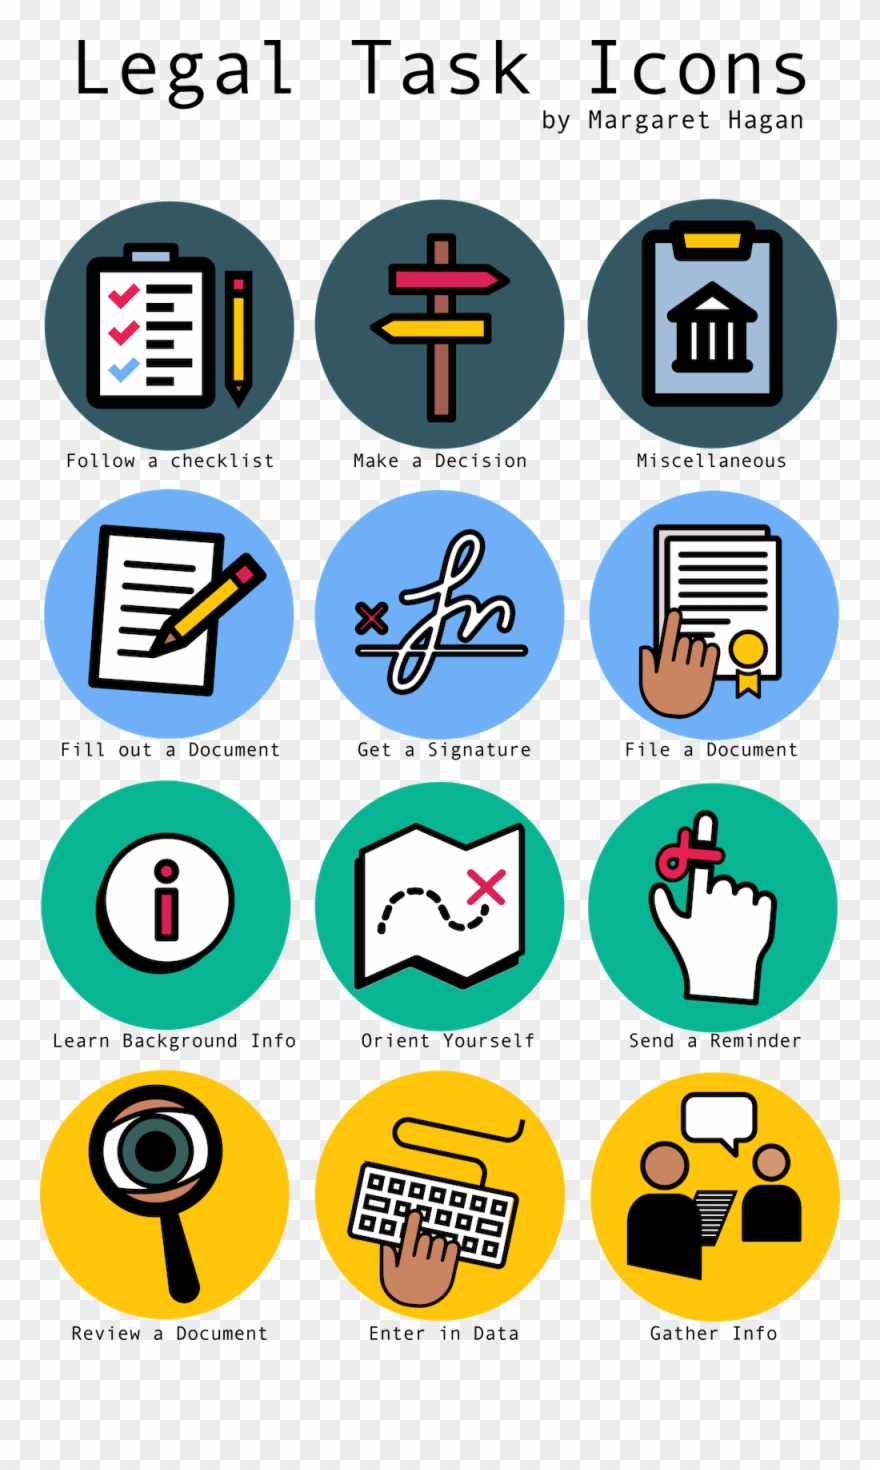 Legal Icons For Tasks.